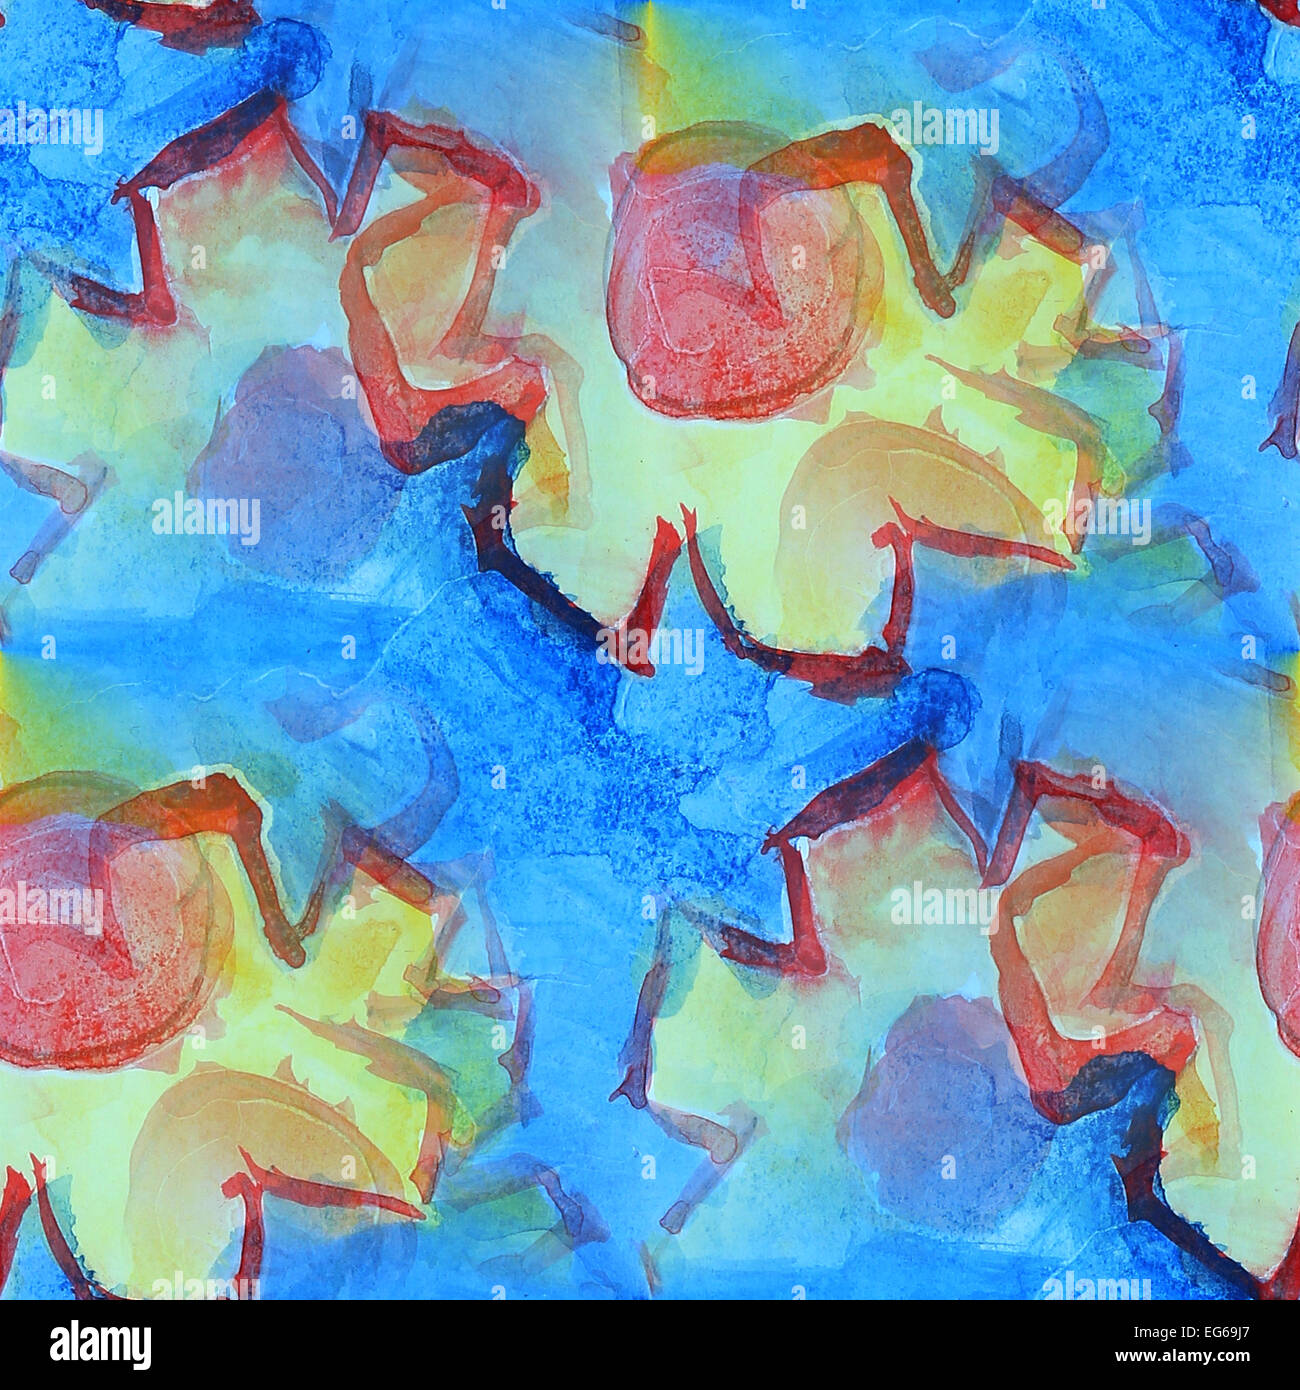 Motif coloré de peinture bleu, rouge, jaune texture eau résumé Banque D'Images